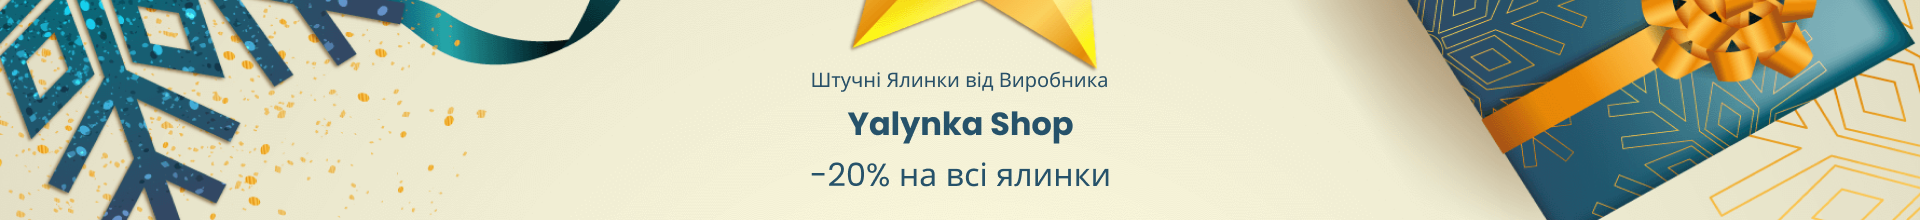 Yalynka Shop &mdash; штучні ялинки від виробника